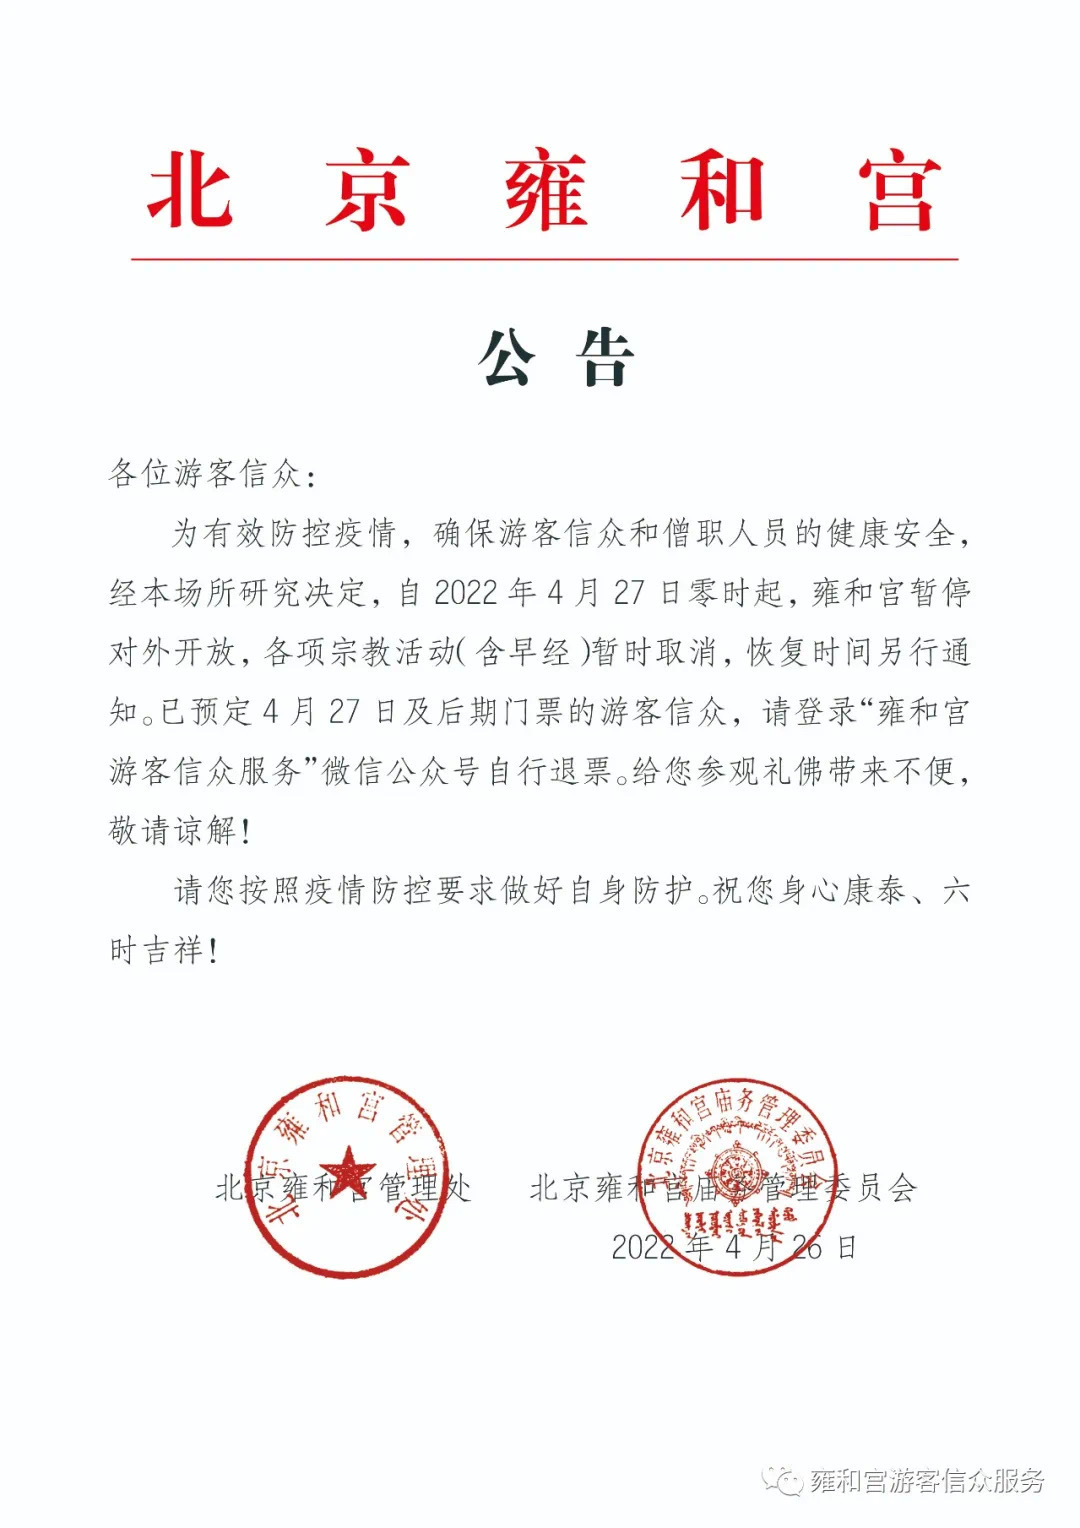 北京雍和宫自2022年4月27日起暂停开放